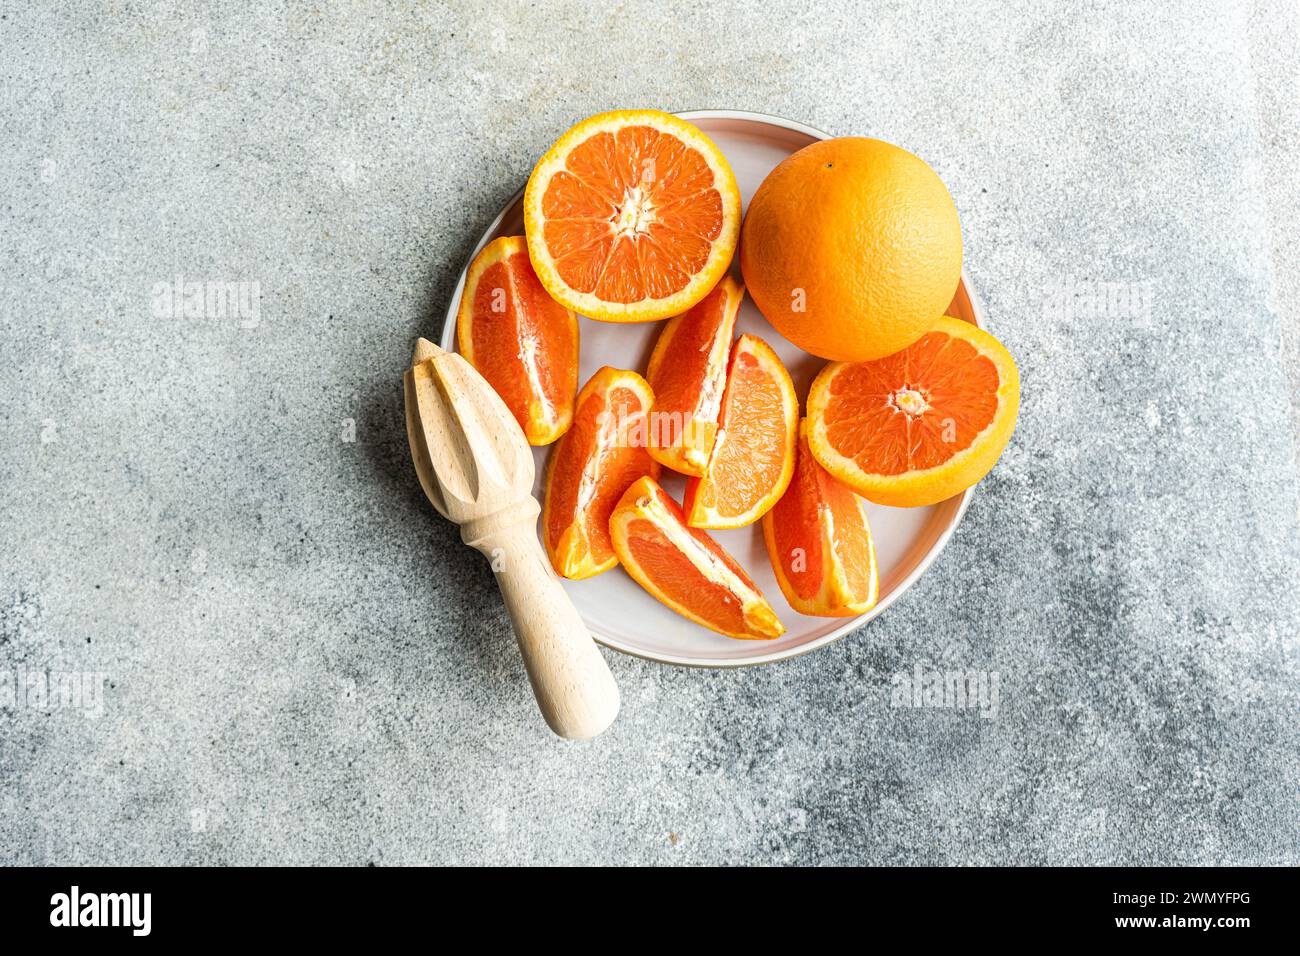 Dal piatto superiore con segmenti di arance mature e un'arancia intera accanto a una centrifuga di agrumi in legno su sfondo testurizzato. Foto Stock